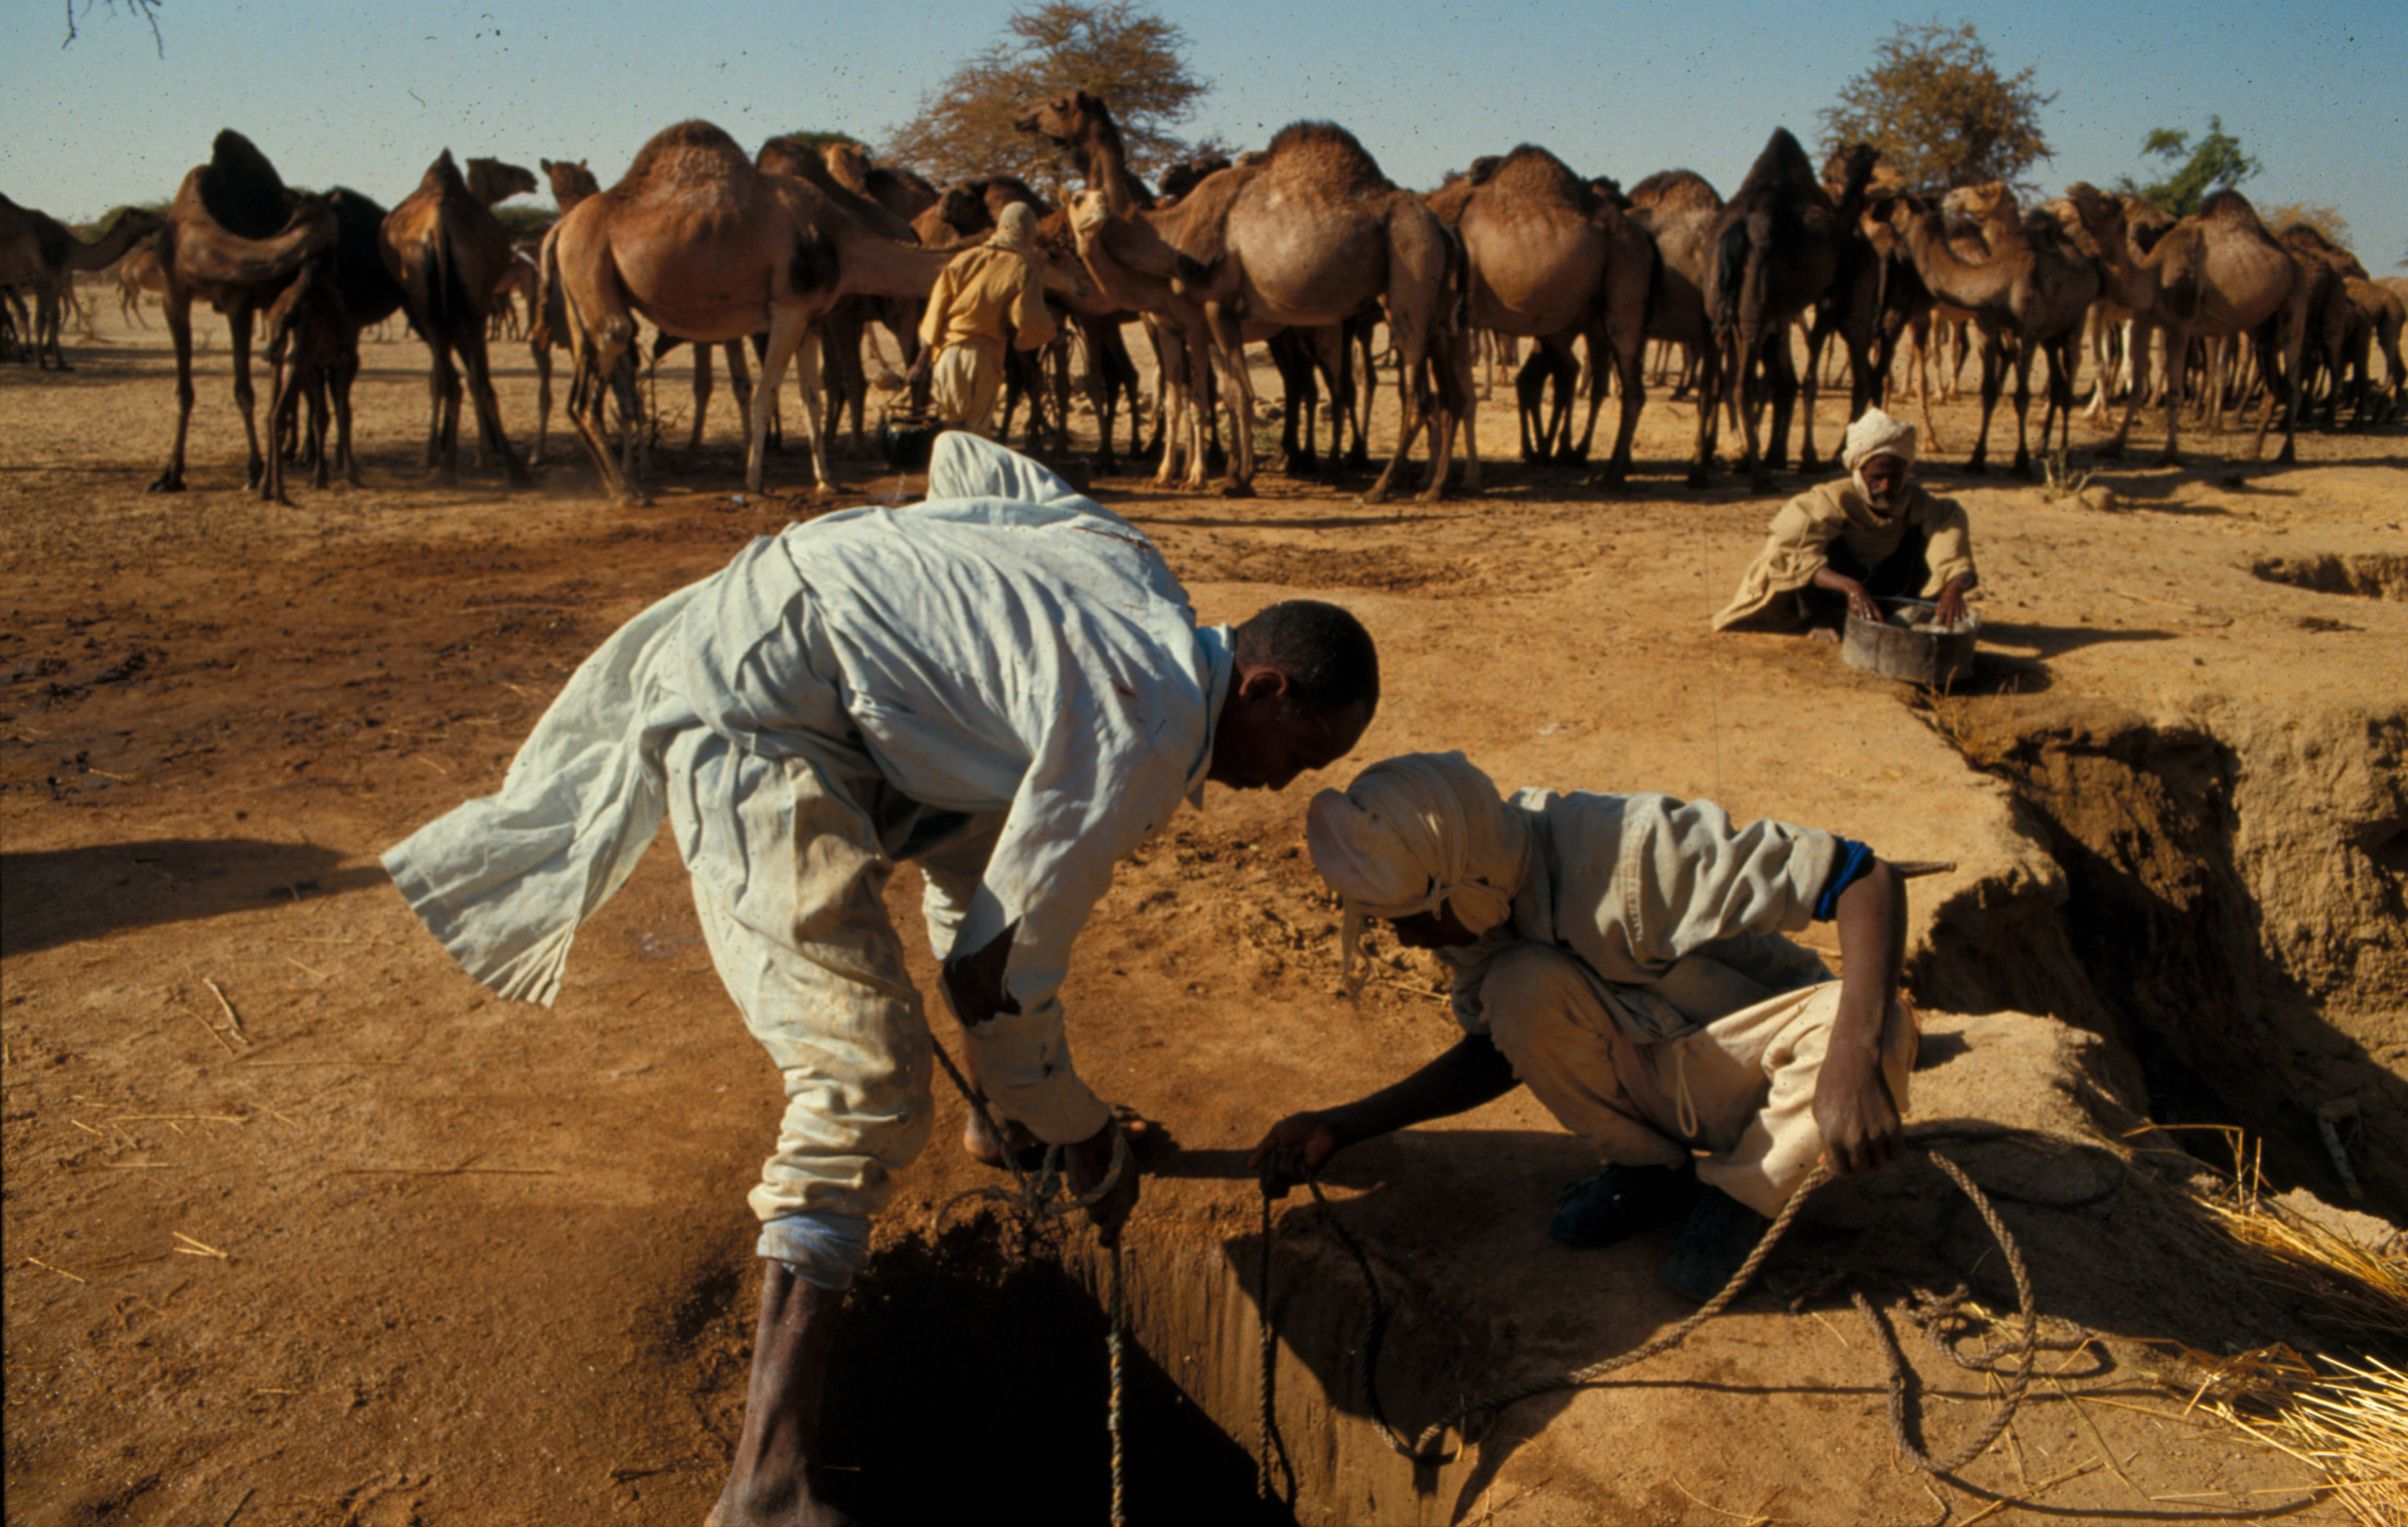 Brunnen in der Wüste des Tschad | picture-alliance / Godong